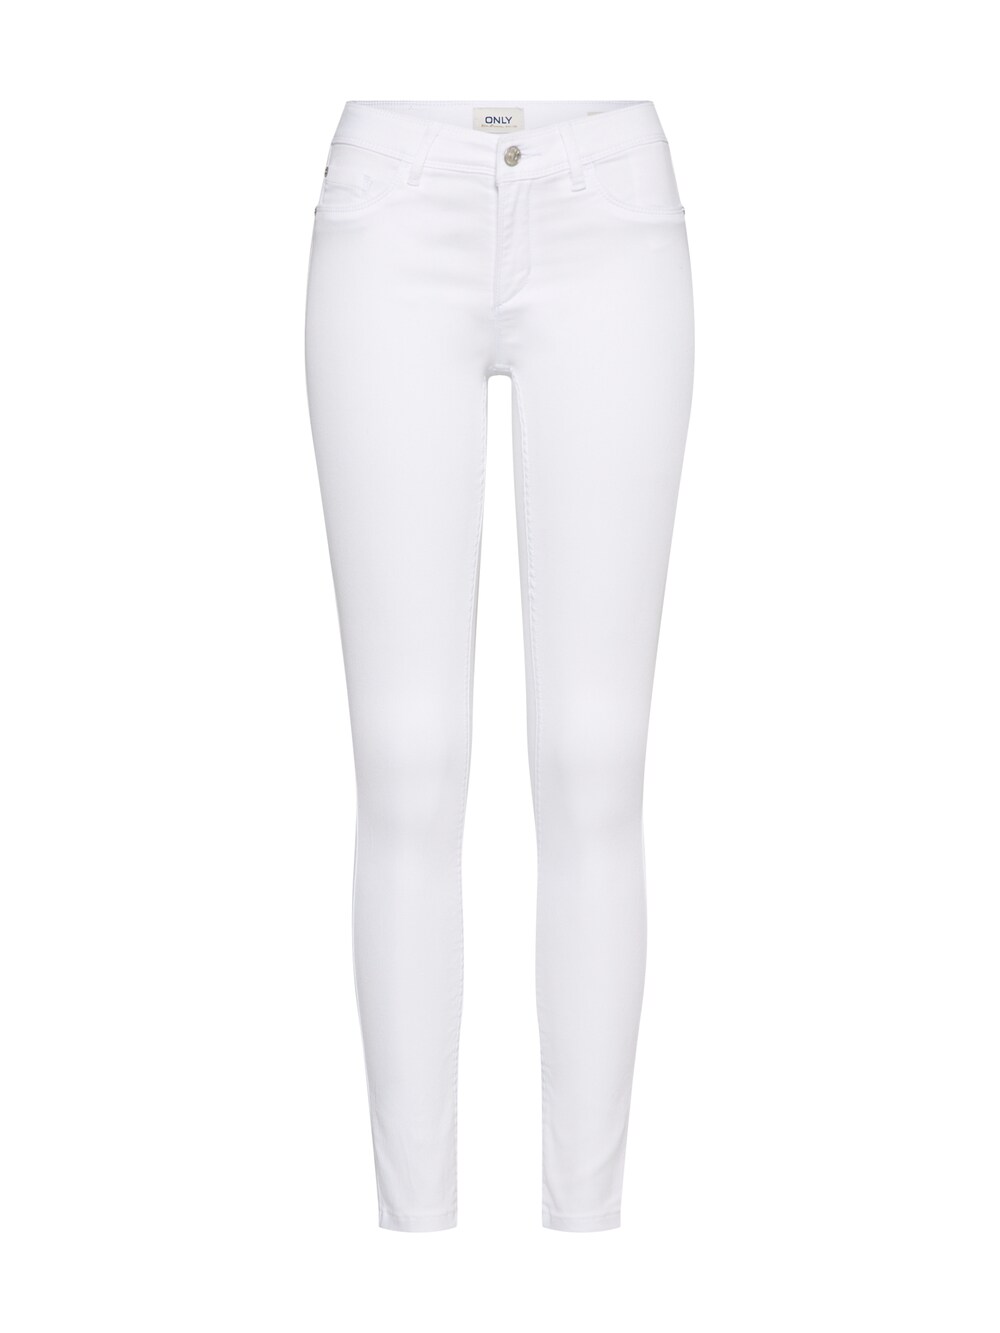 Узкие джинсы ONLY ONLUltimate, белый узкие джинсы only wauw белый